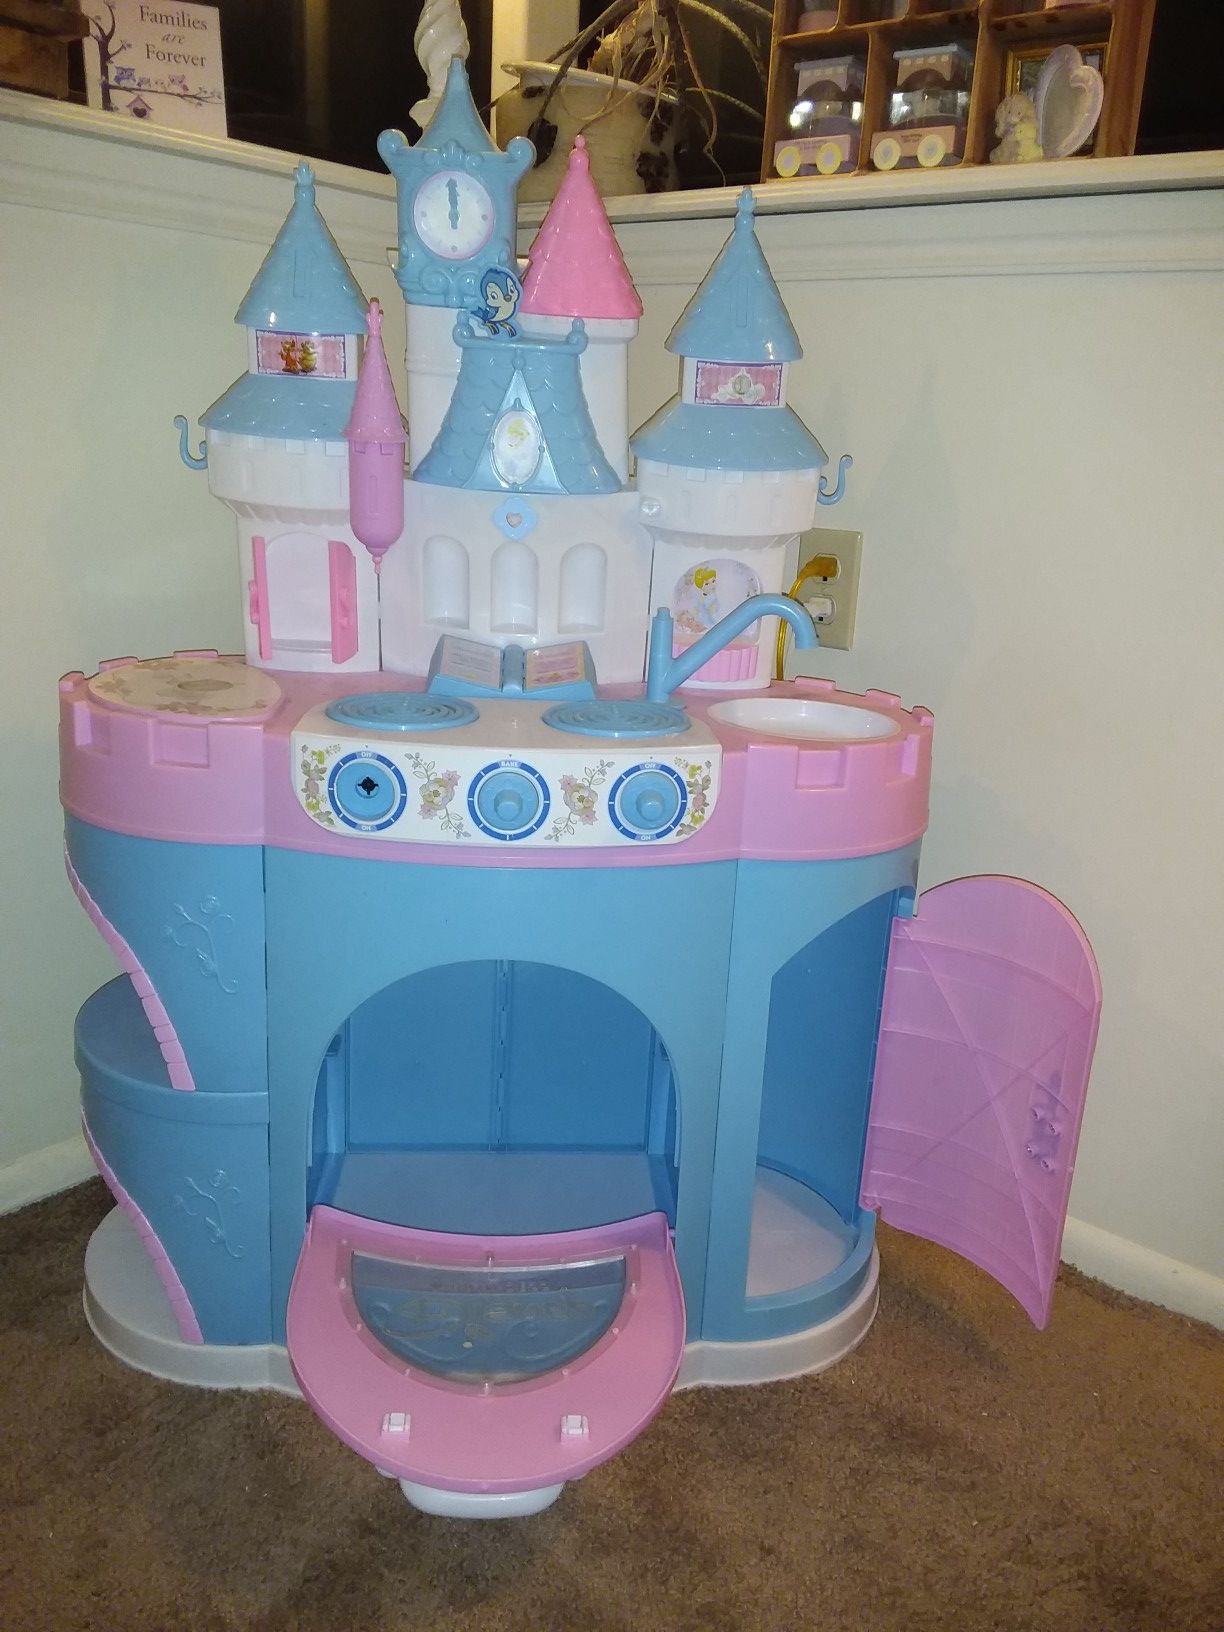 Child's castle kitchen set